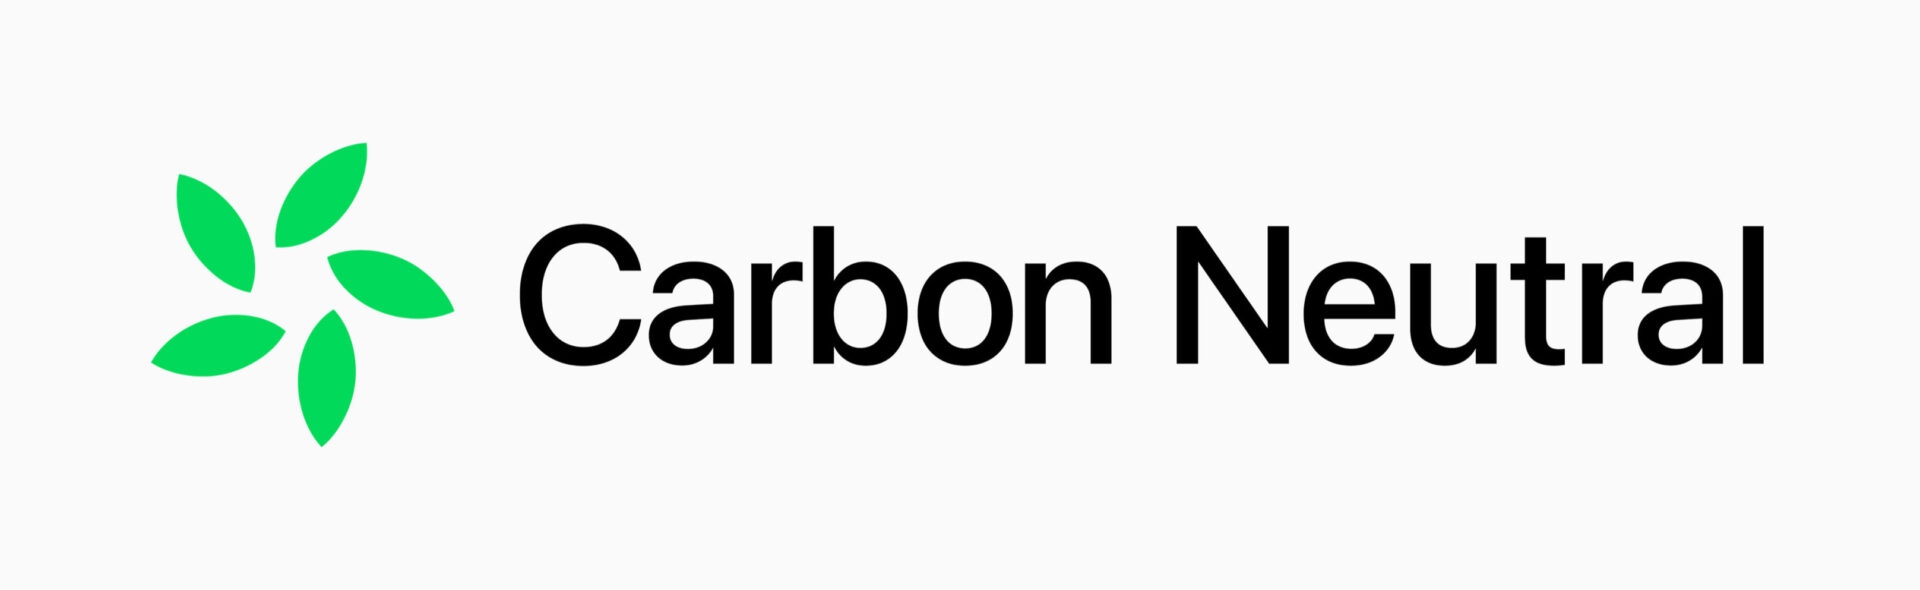 Apple Carbon Neutral